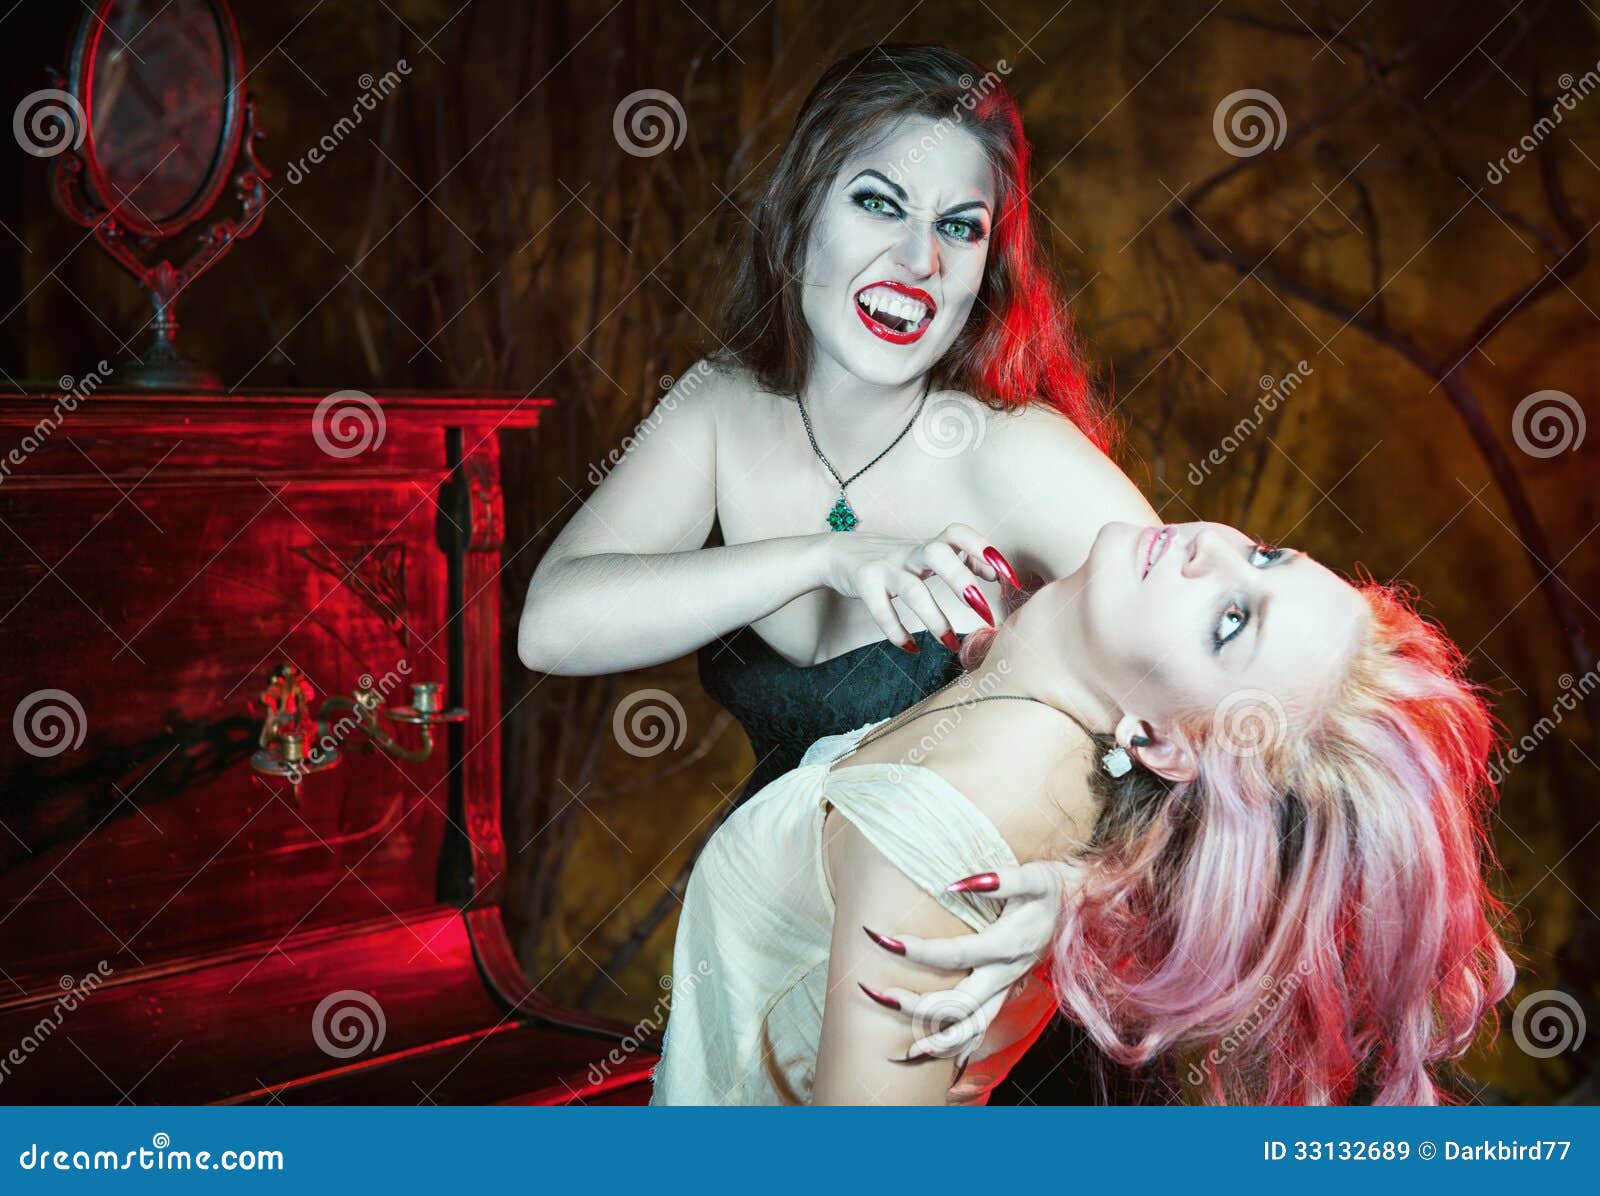 голая вампирша кусает девушку фото 97